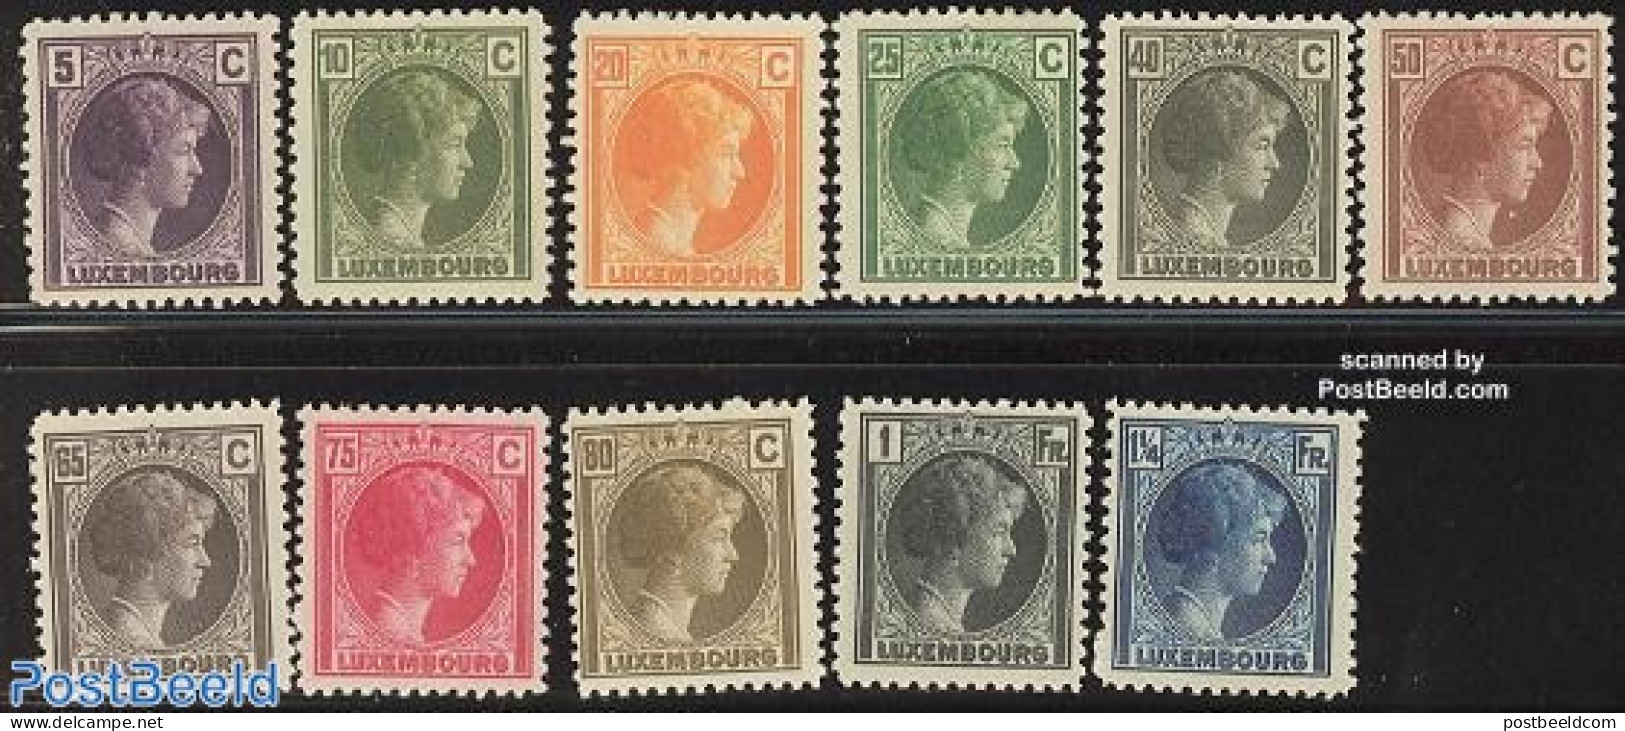 Luxemburg 1926 Definitives 11v, Mint NH - Nuevos